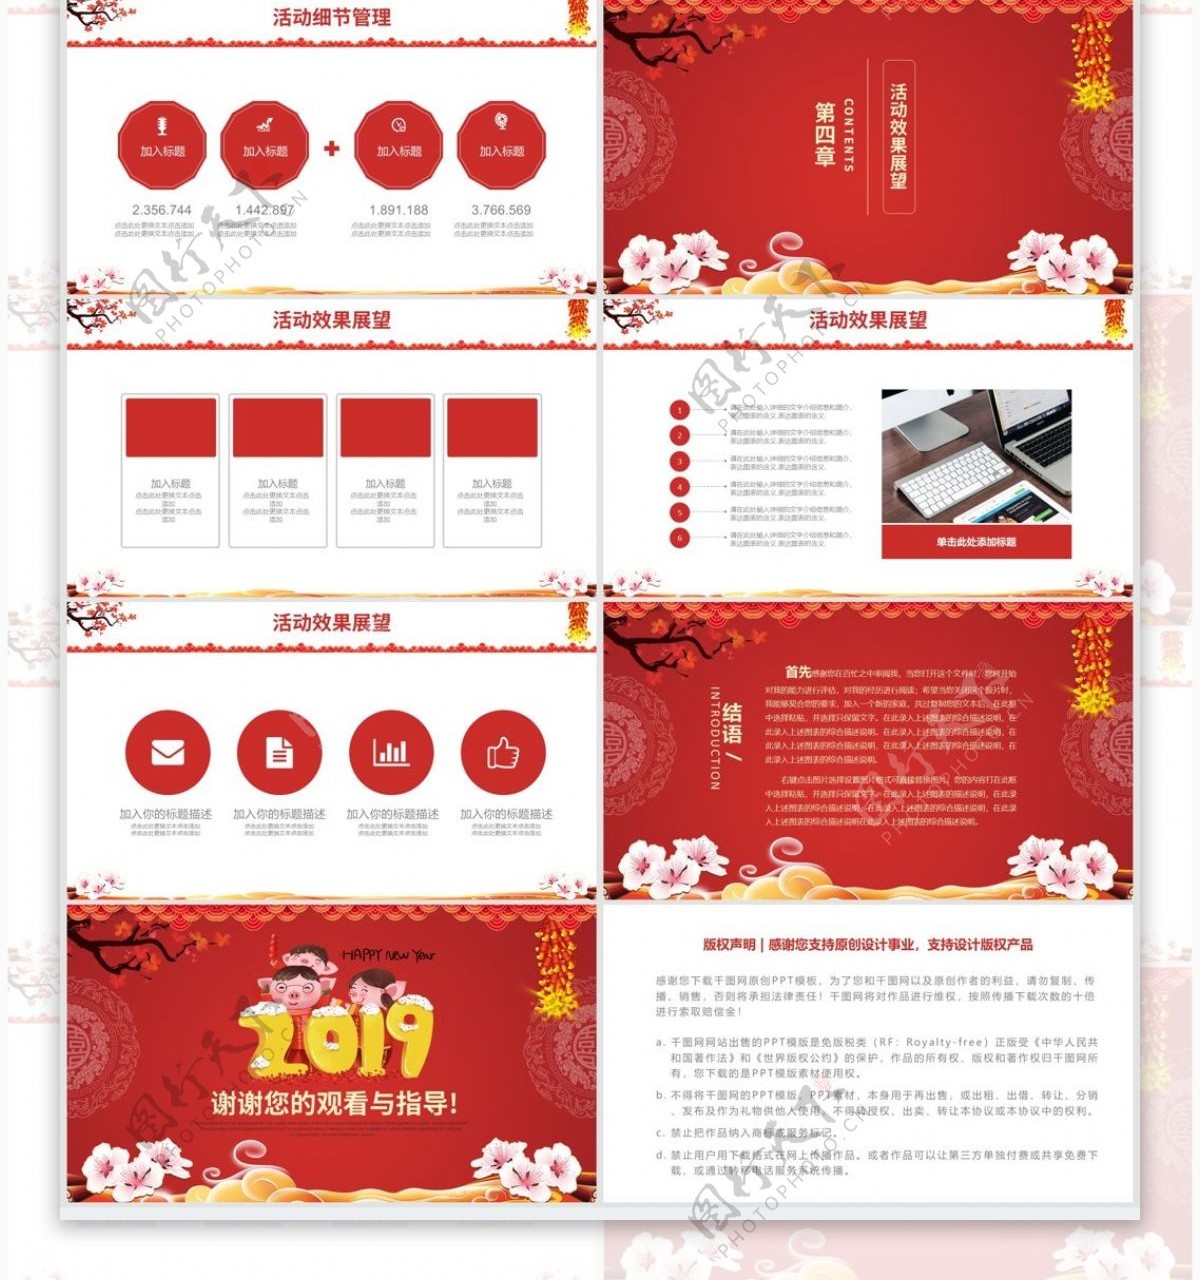 红色喜庆猪年年货节活动促销通用PPT模板